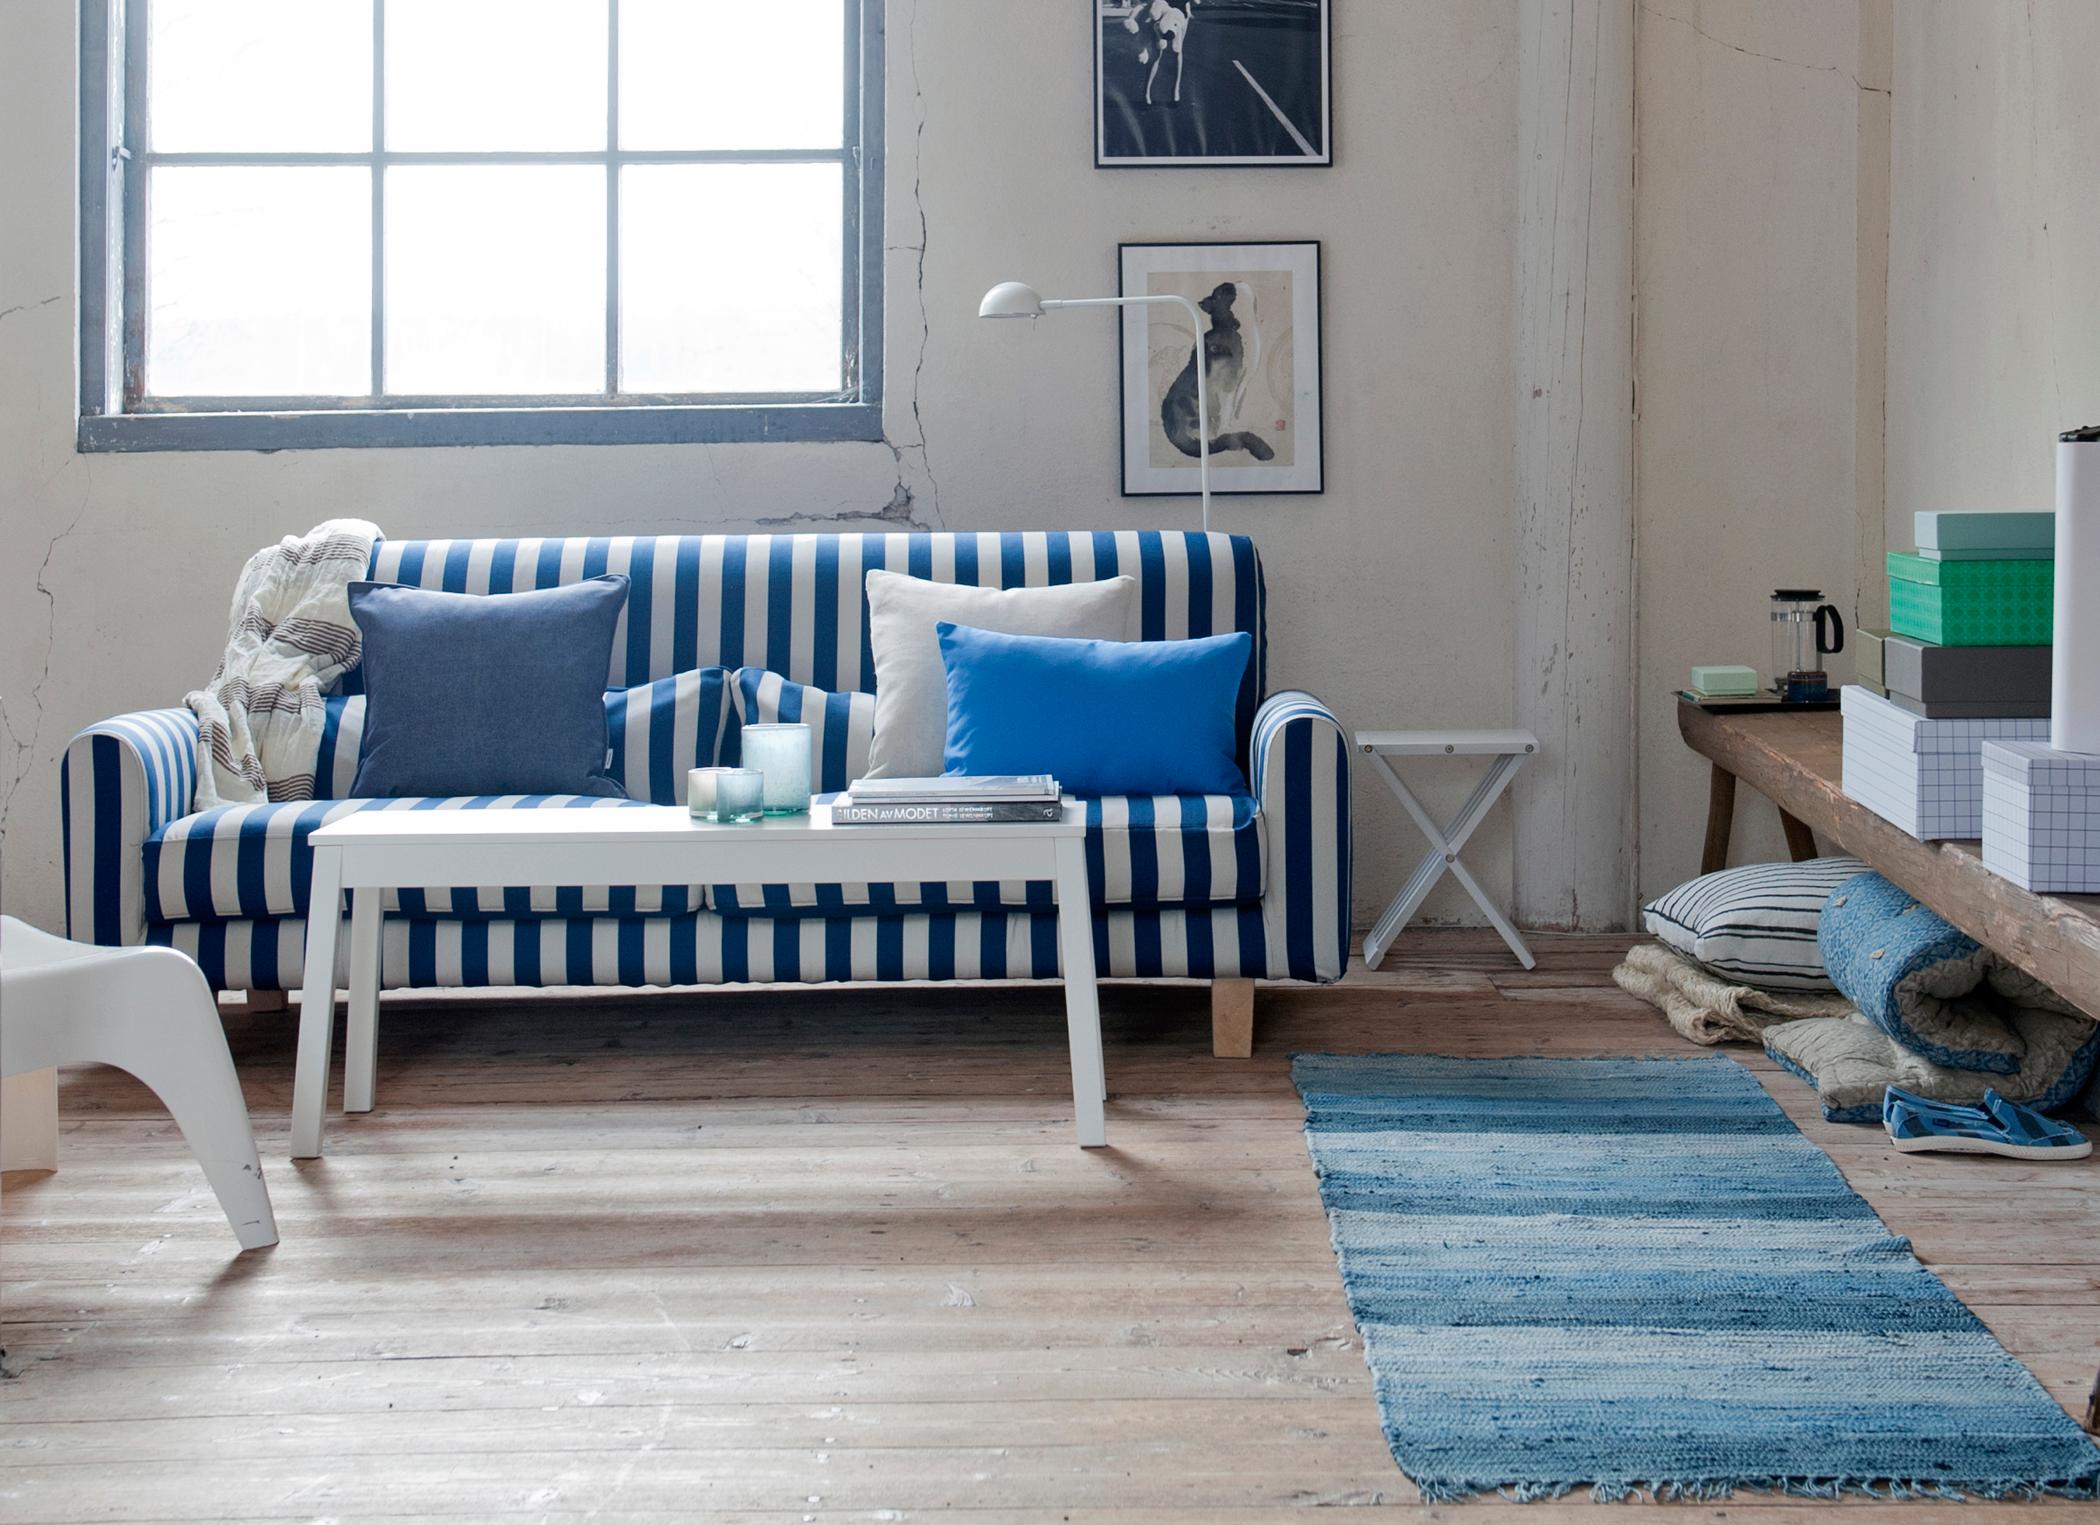 Blau-weiß gestreiftes Sofa #couchtisch #beistelltisch #stehlampe #holzbank #sofakissen #sofa #sitzkissen #weißercouchtisch #maritim #gestreiftessofa ©Bemz